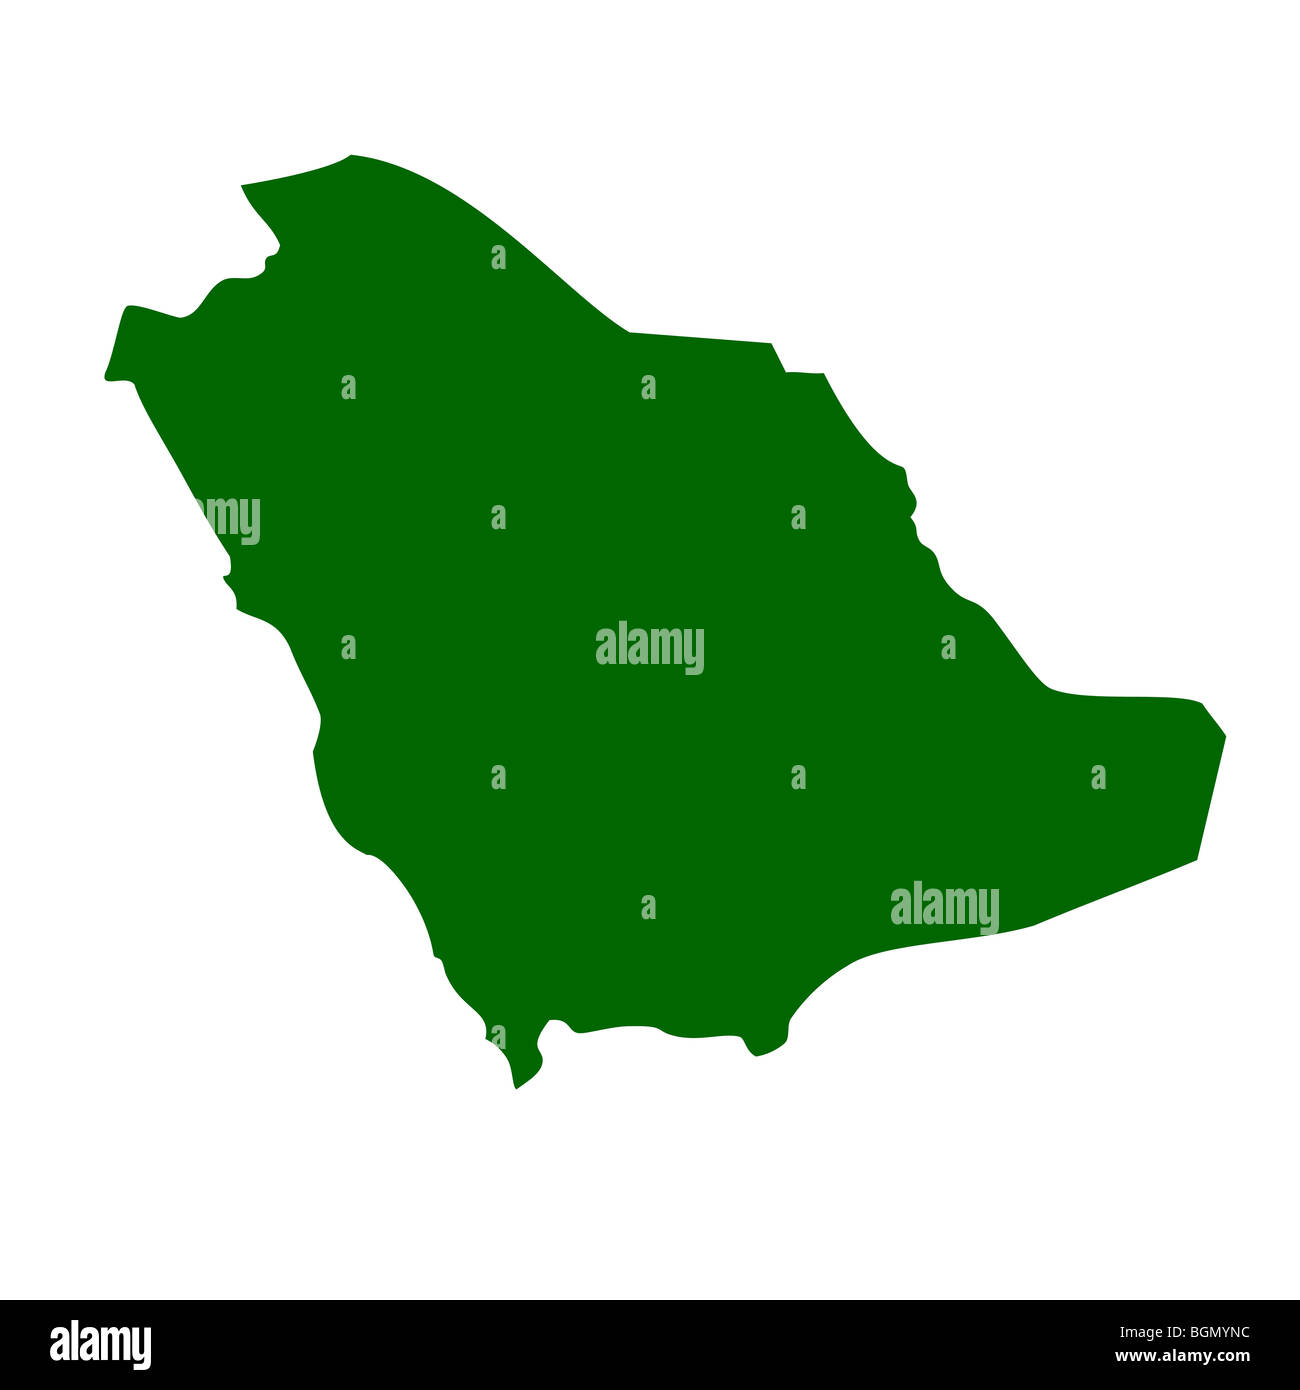 Saudi Arabia map isolated on white background. Stock Photo